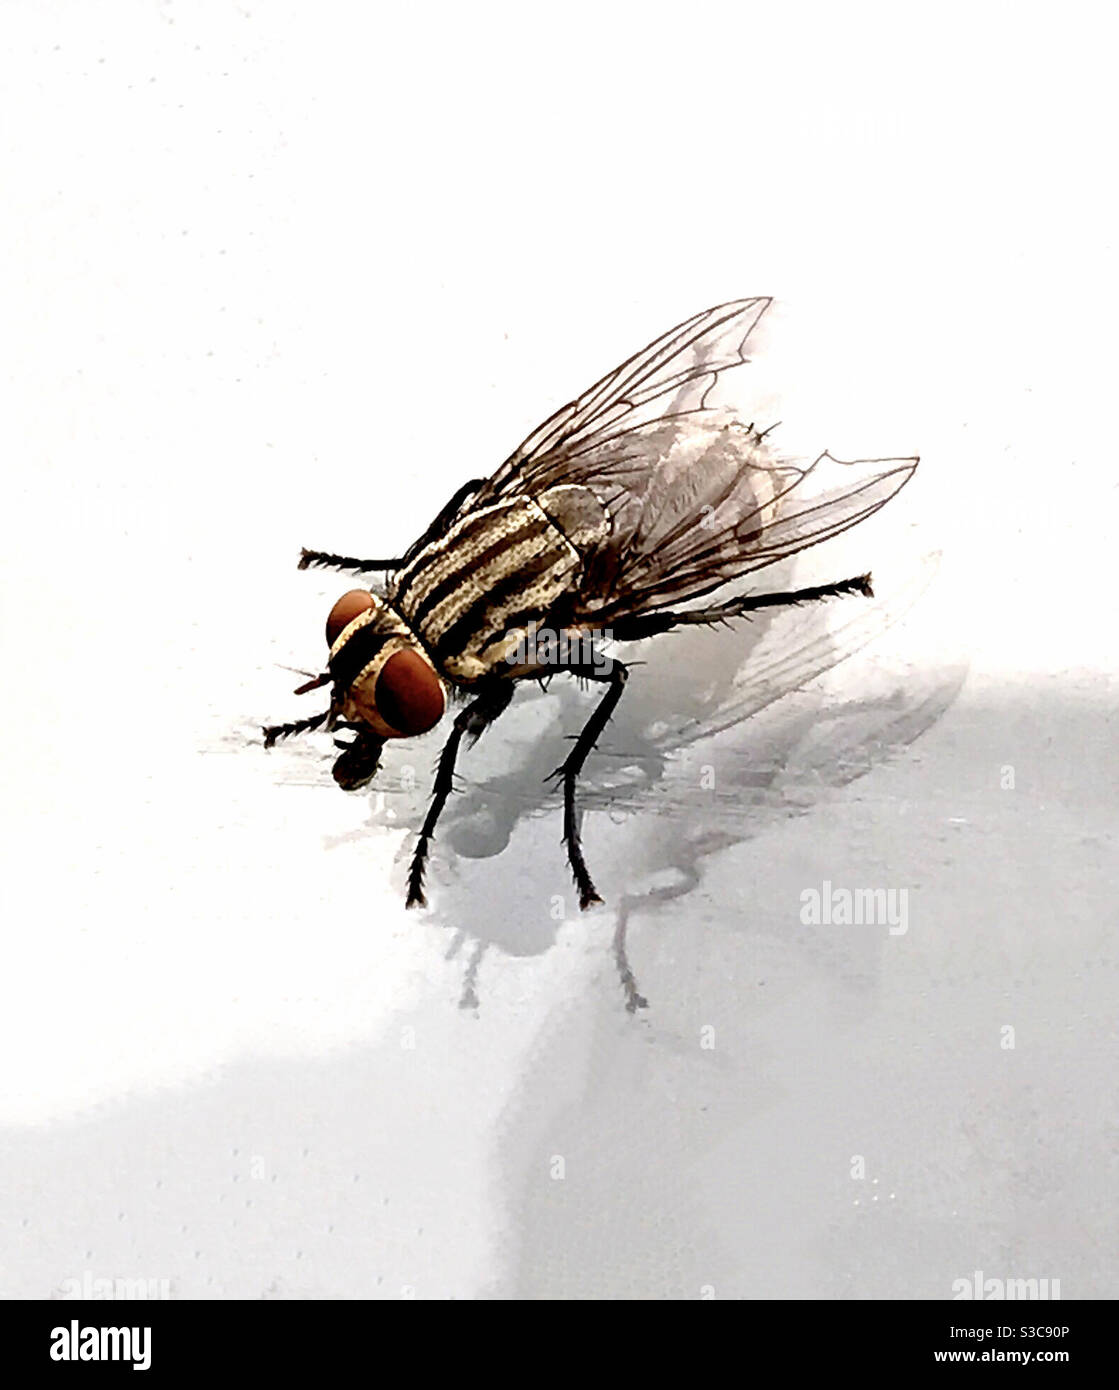 Photo de la mouche domestique, insecte volant, insecte mordant Banque D'Images